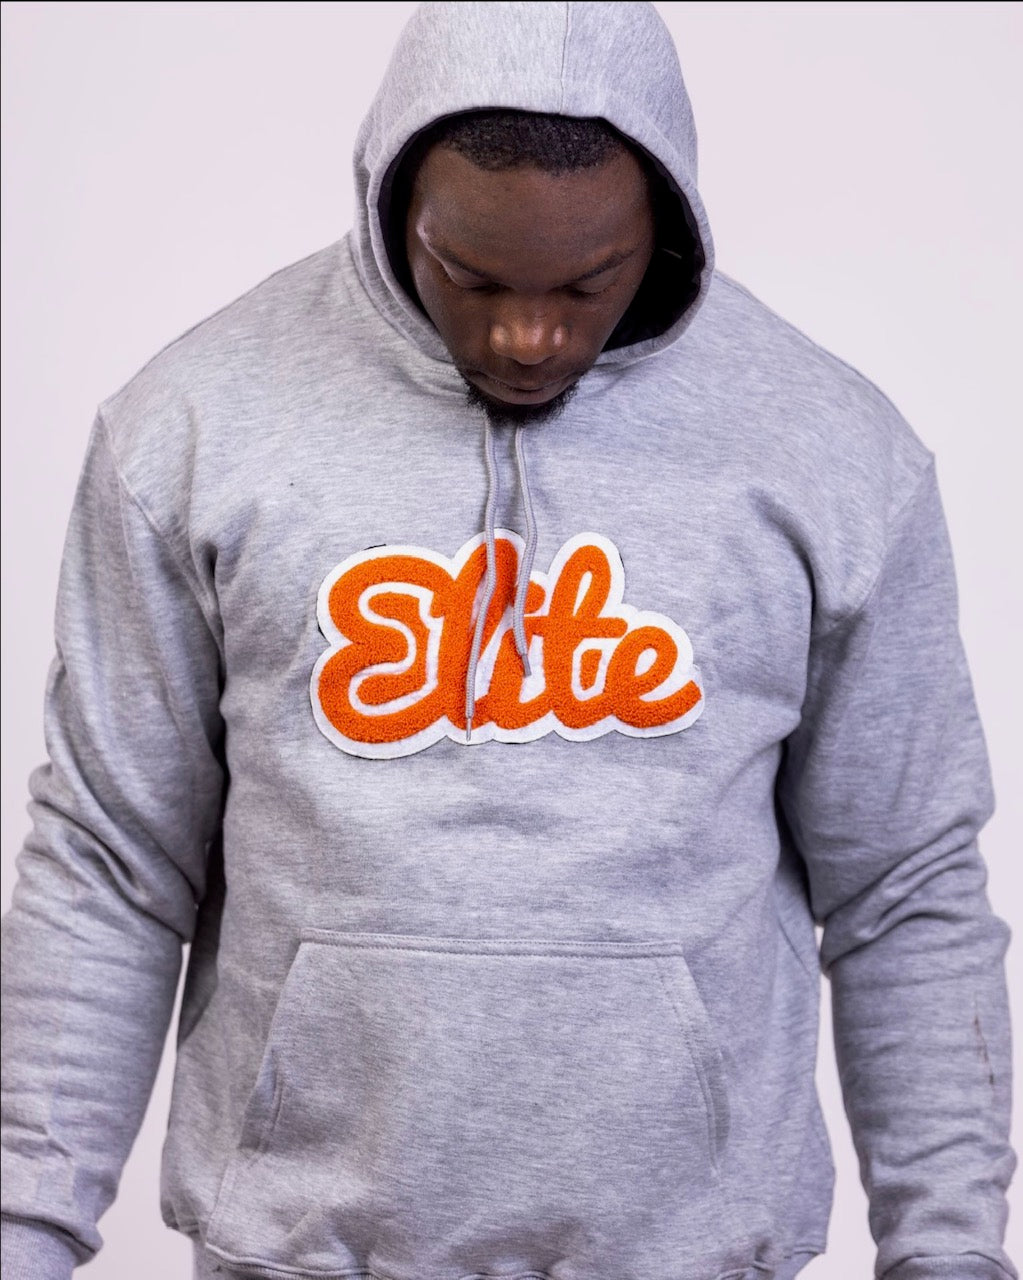 Elite Grey/Orange Hoody